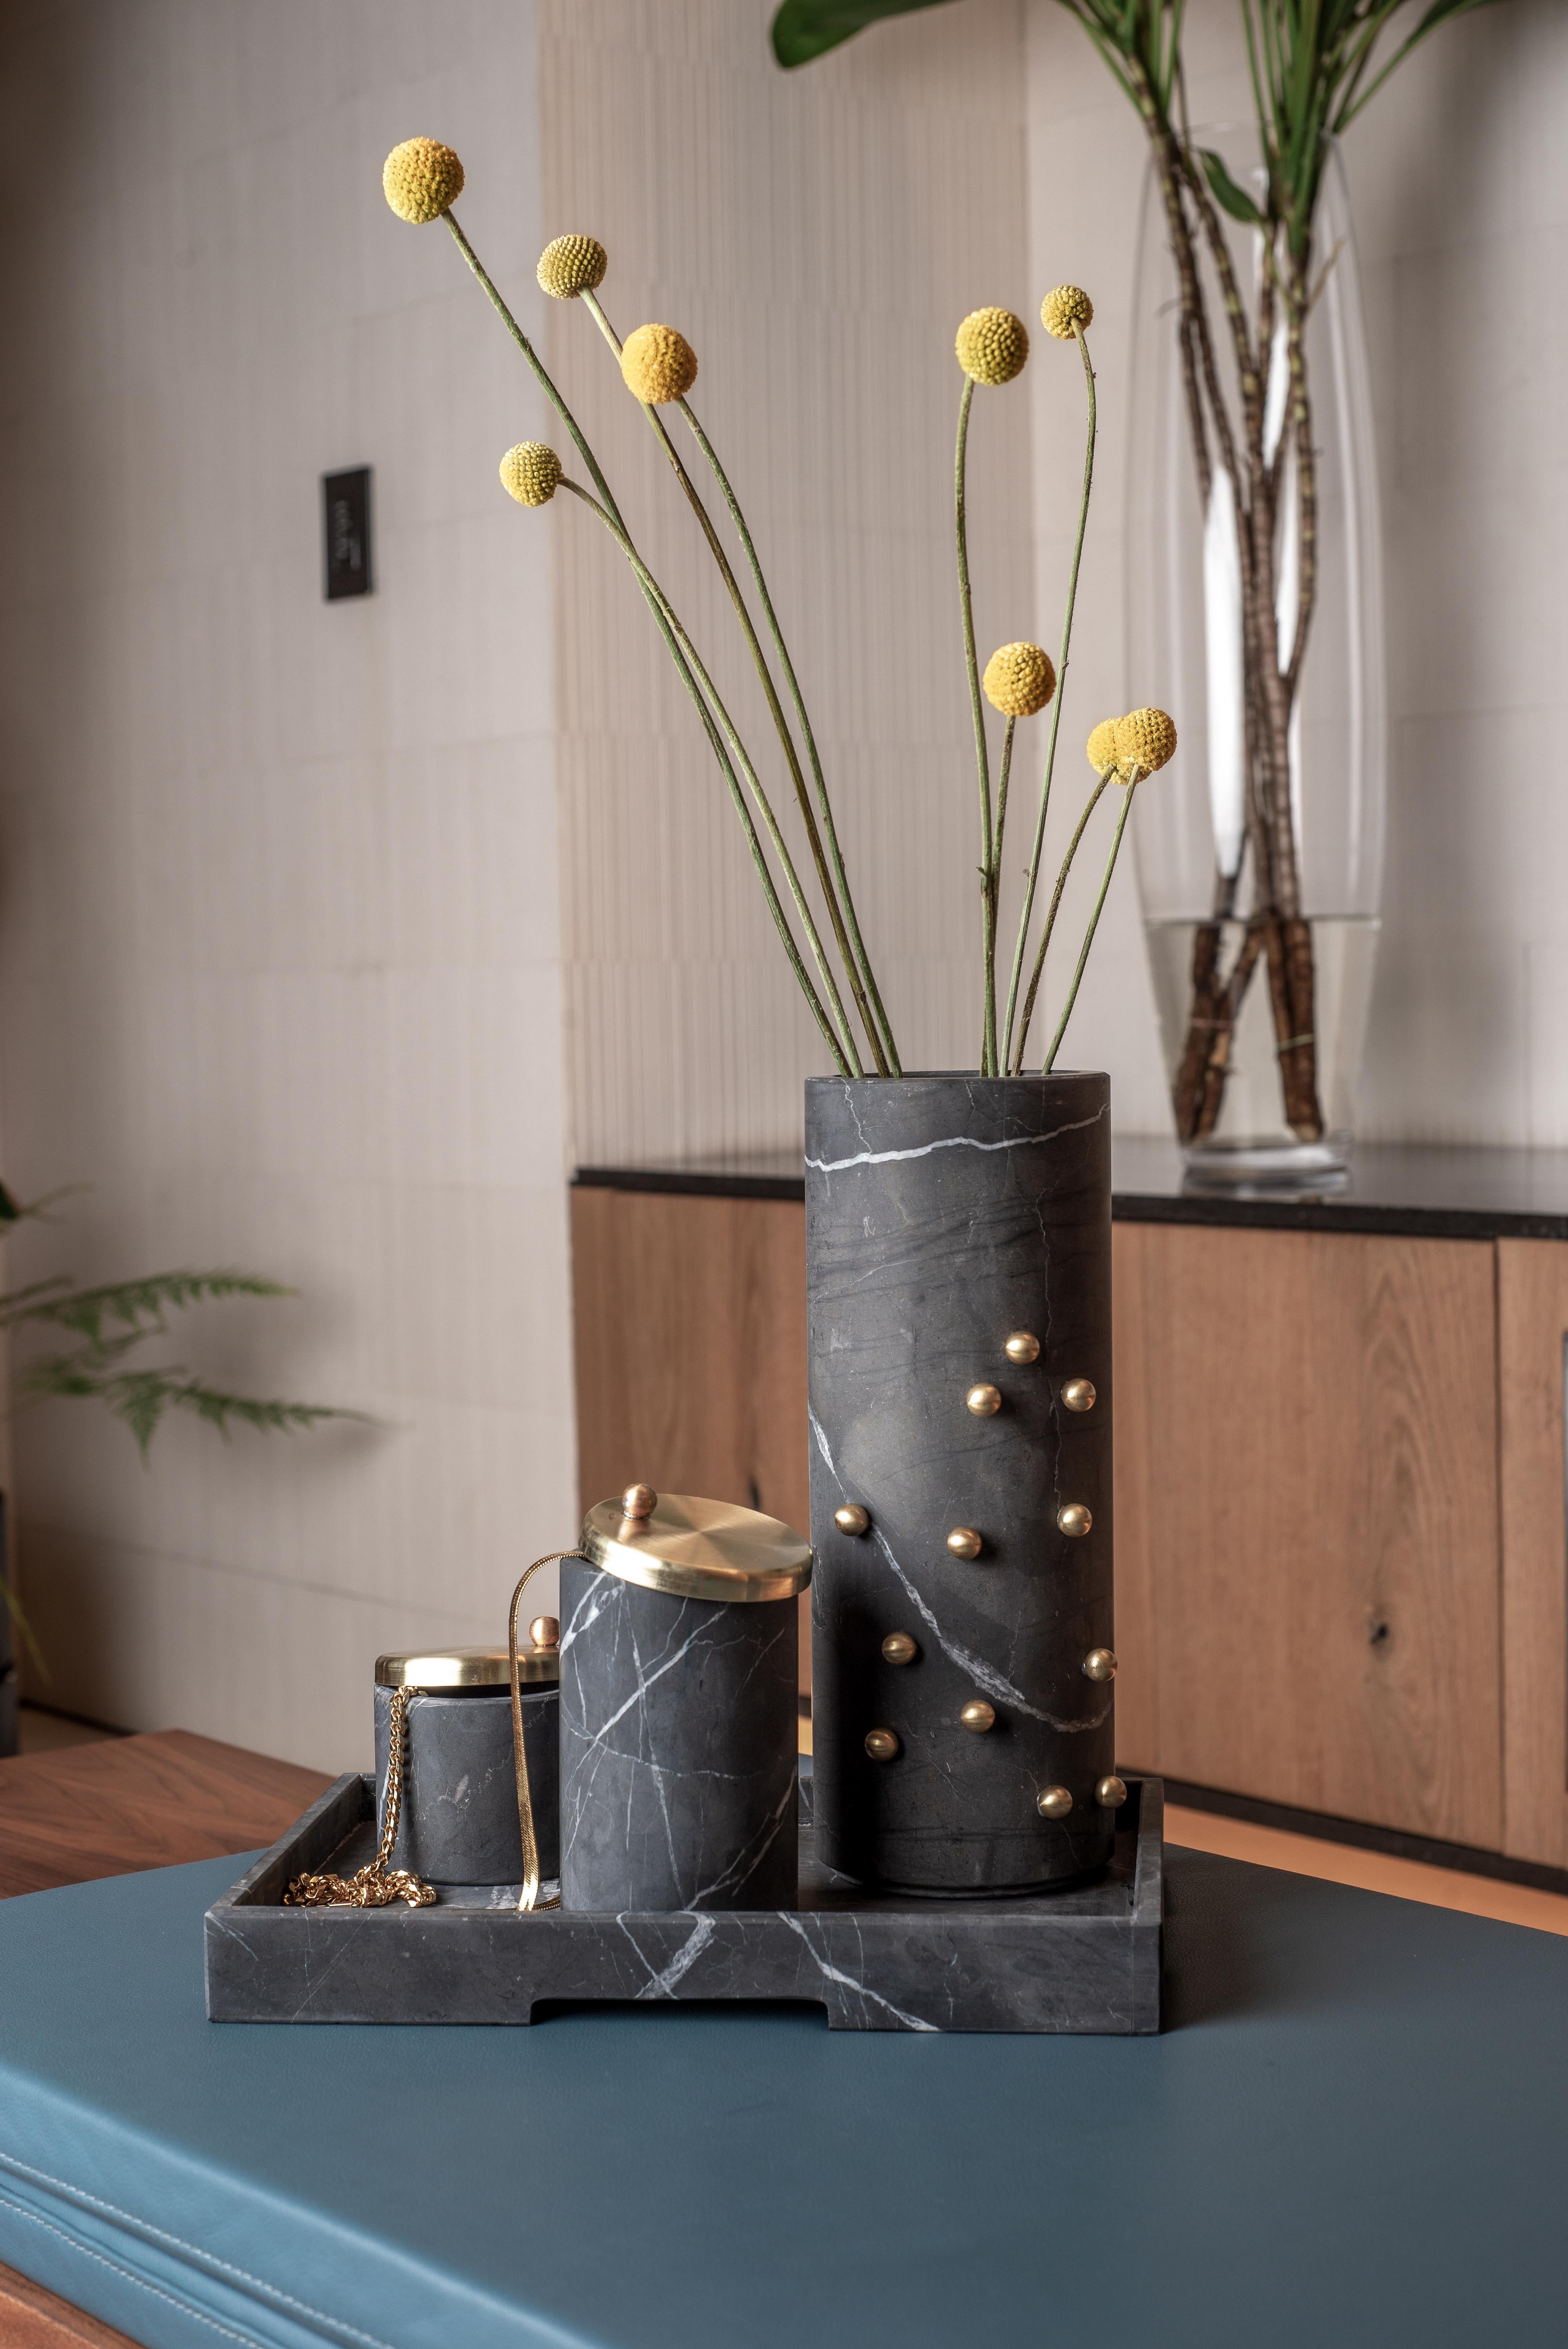 Élevez votre décor avec l'exquis grand vase Bruci Confetti, une pièce d'affirmation étonnante conçue pour ajouter une touche d'opulence à votre maison. Fabriqué en marbre de première qualité, ce vase cylindrique est orné d'éclats de laiton dispersés